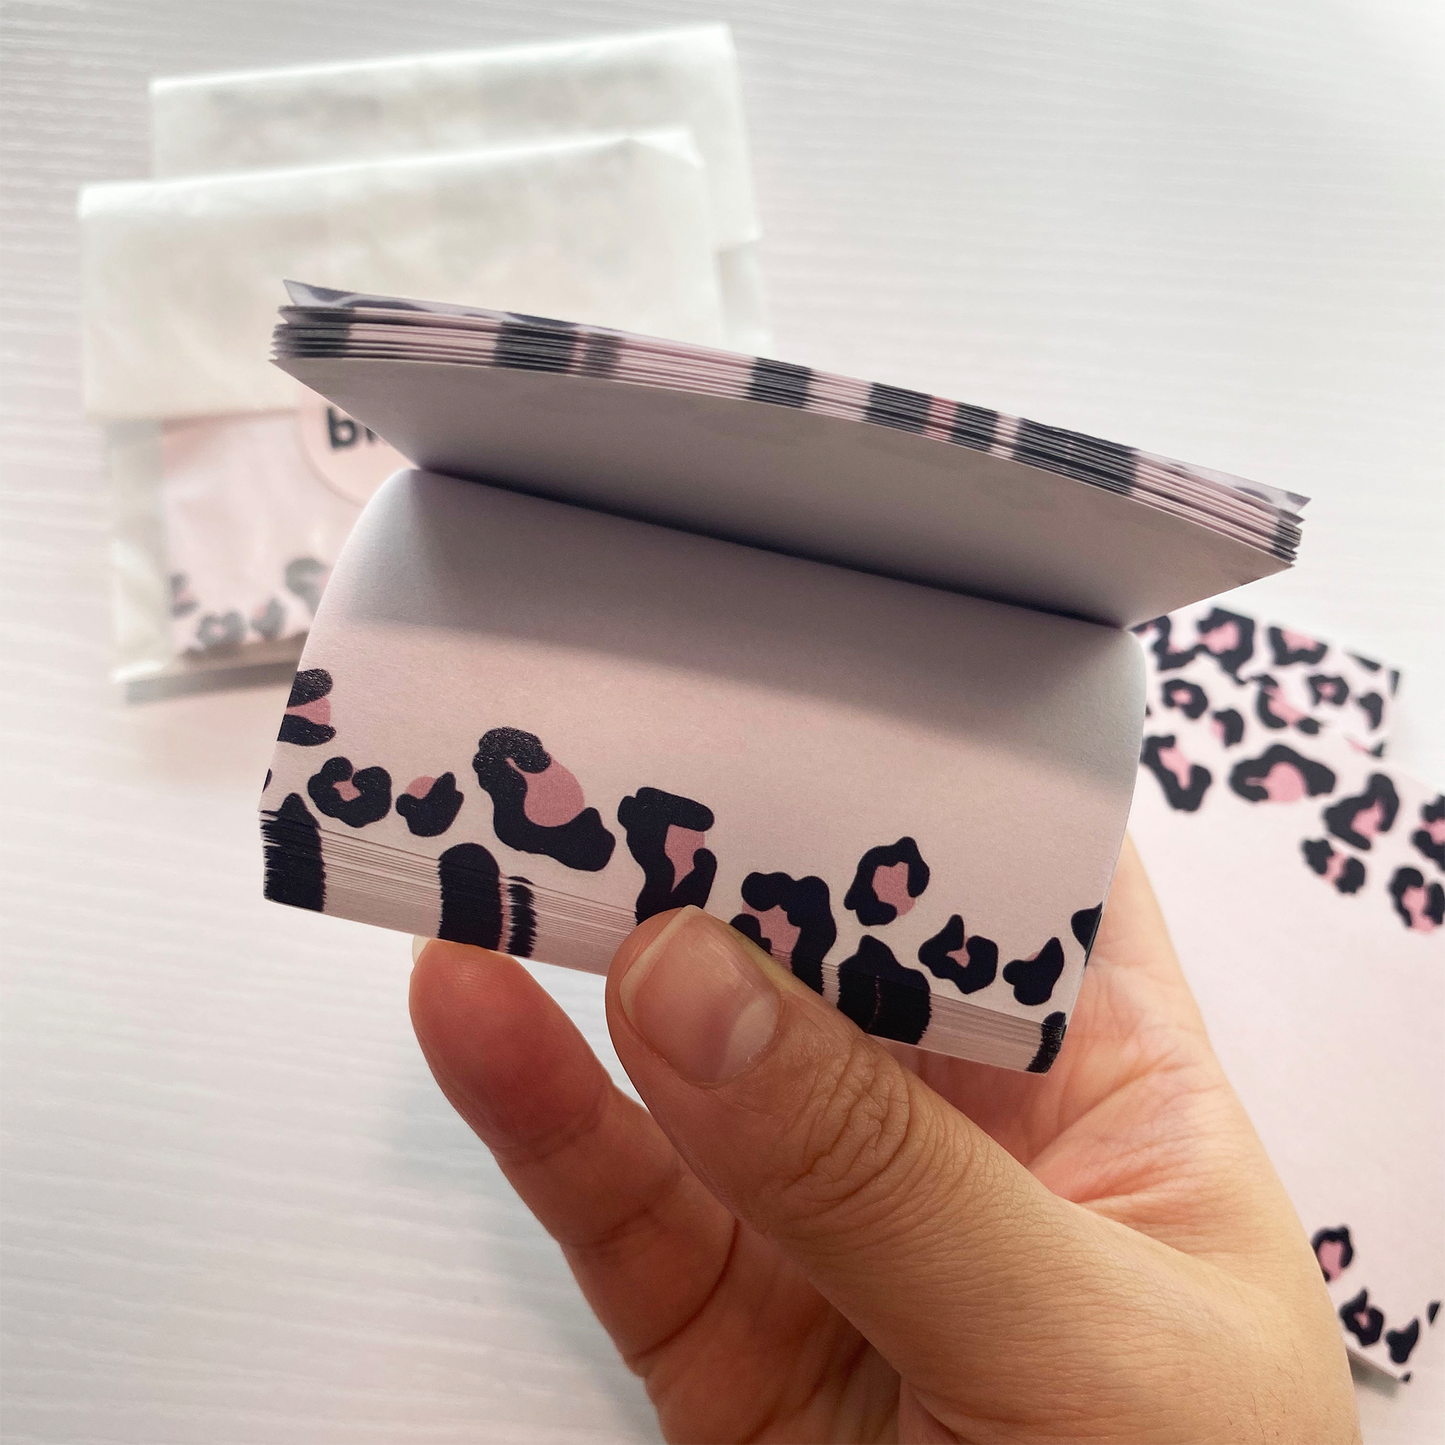 Pink Leopard print sticky notes